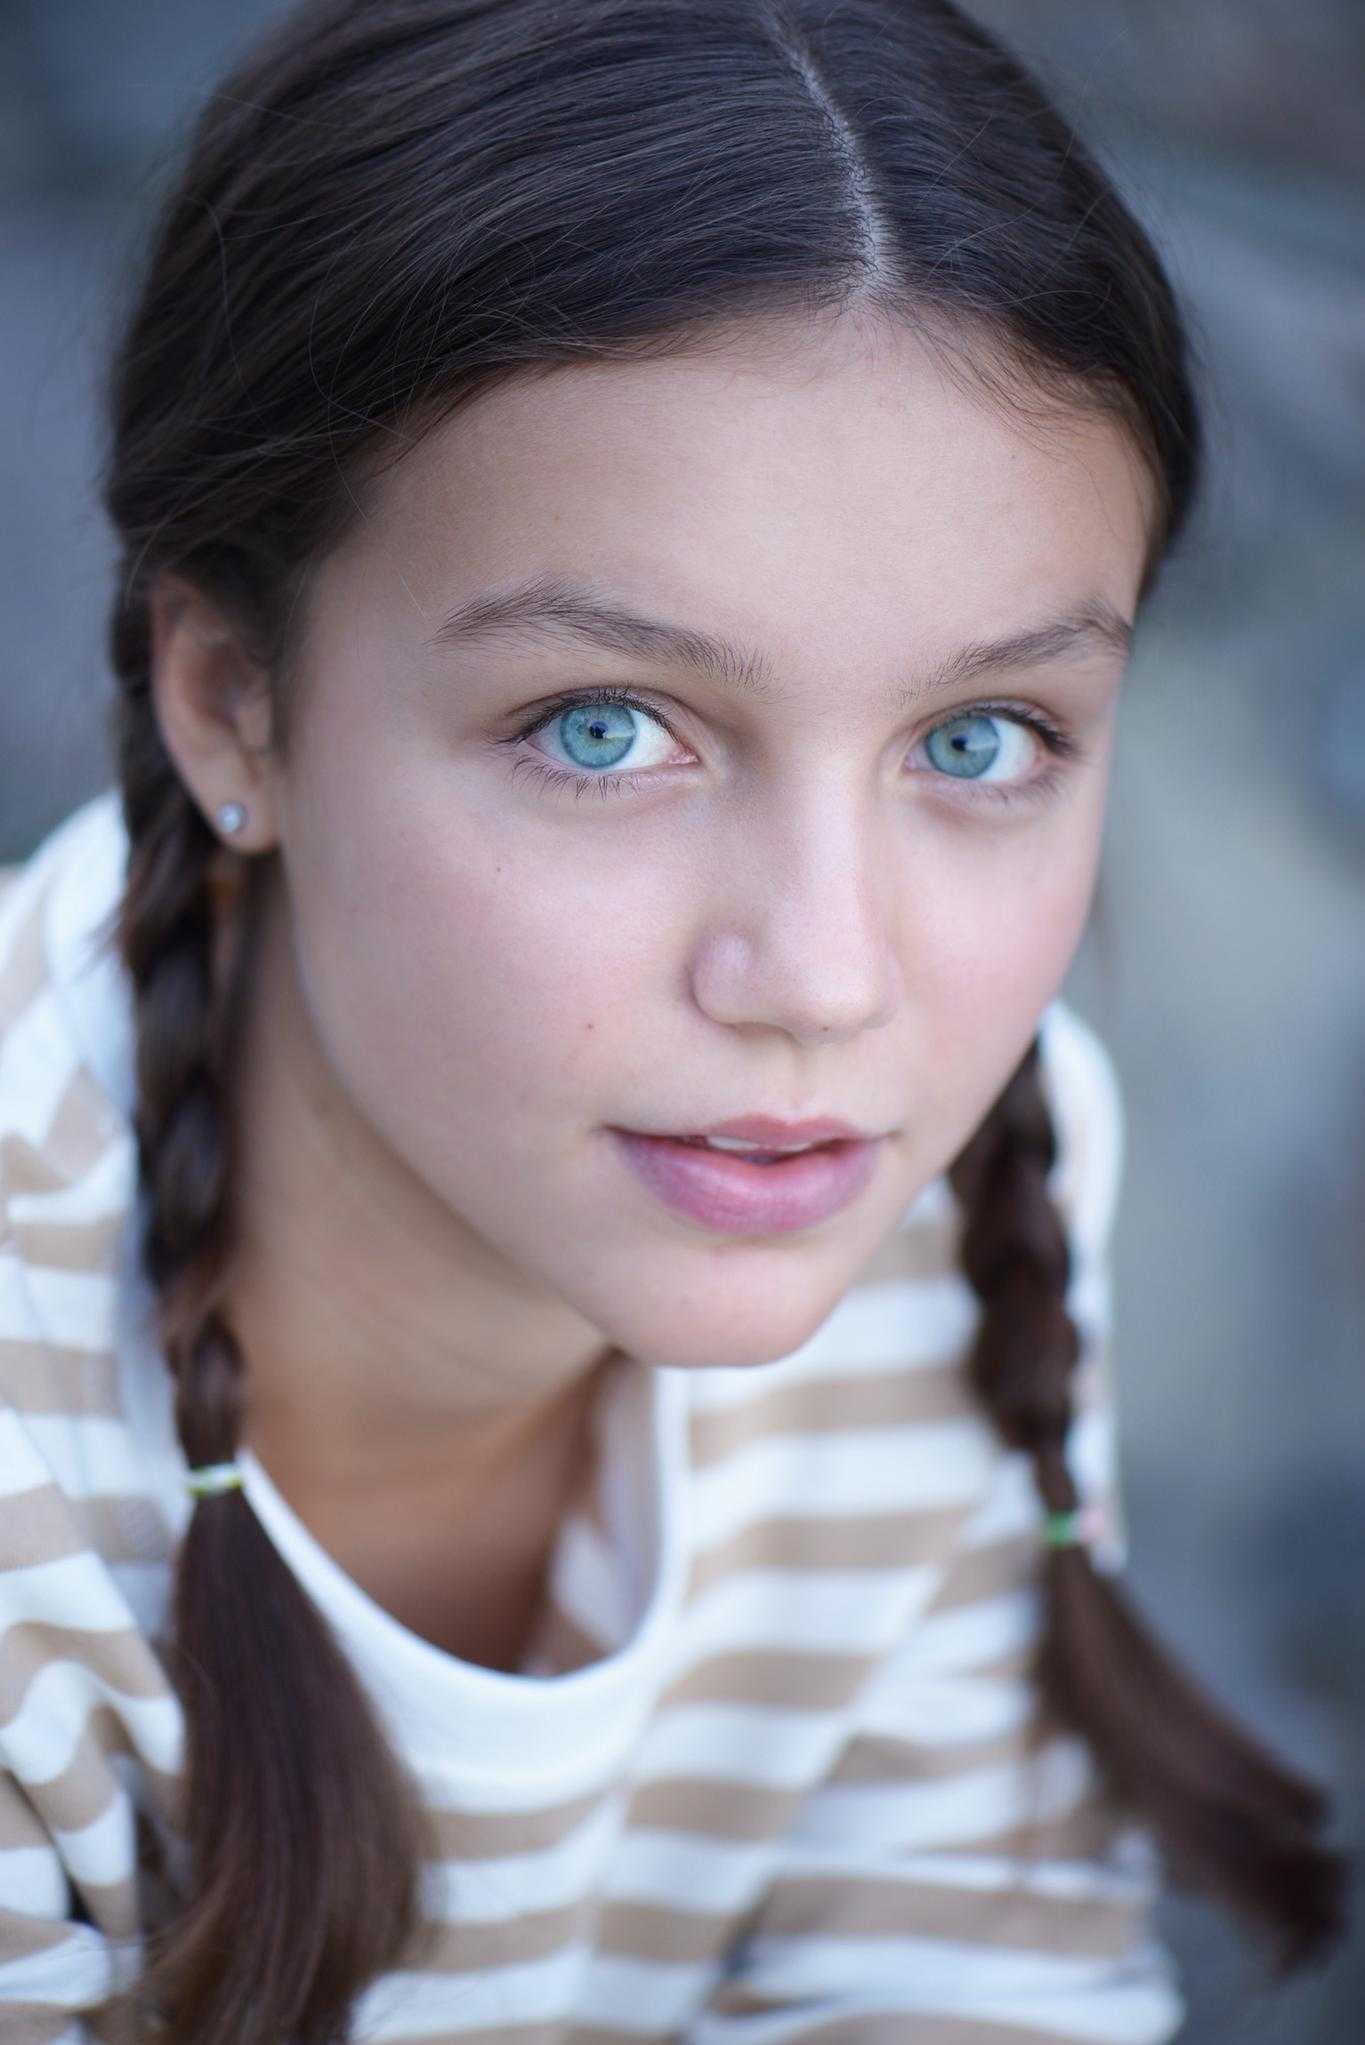 Елена шевченко – биография актрисы, фото, личная жизнь, ее дети 2020